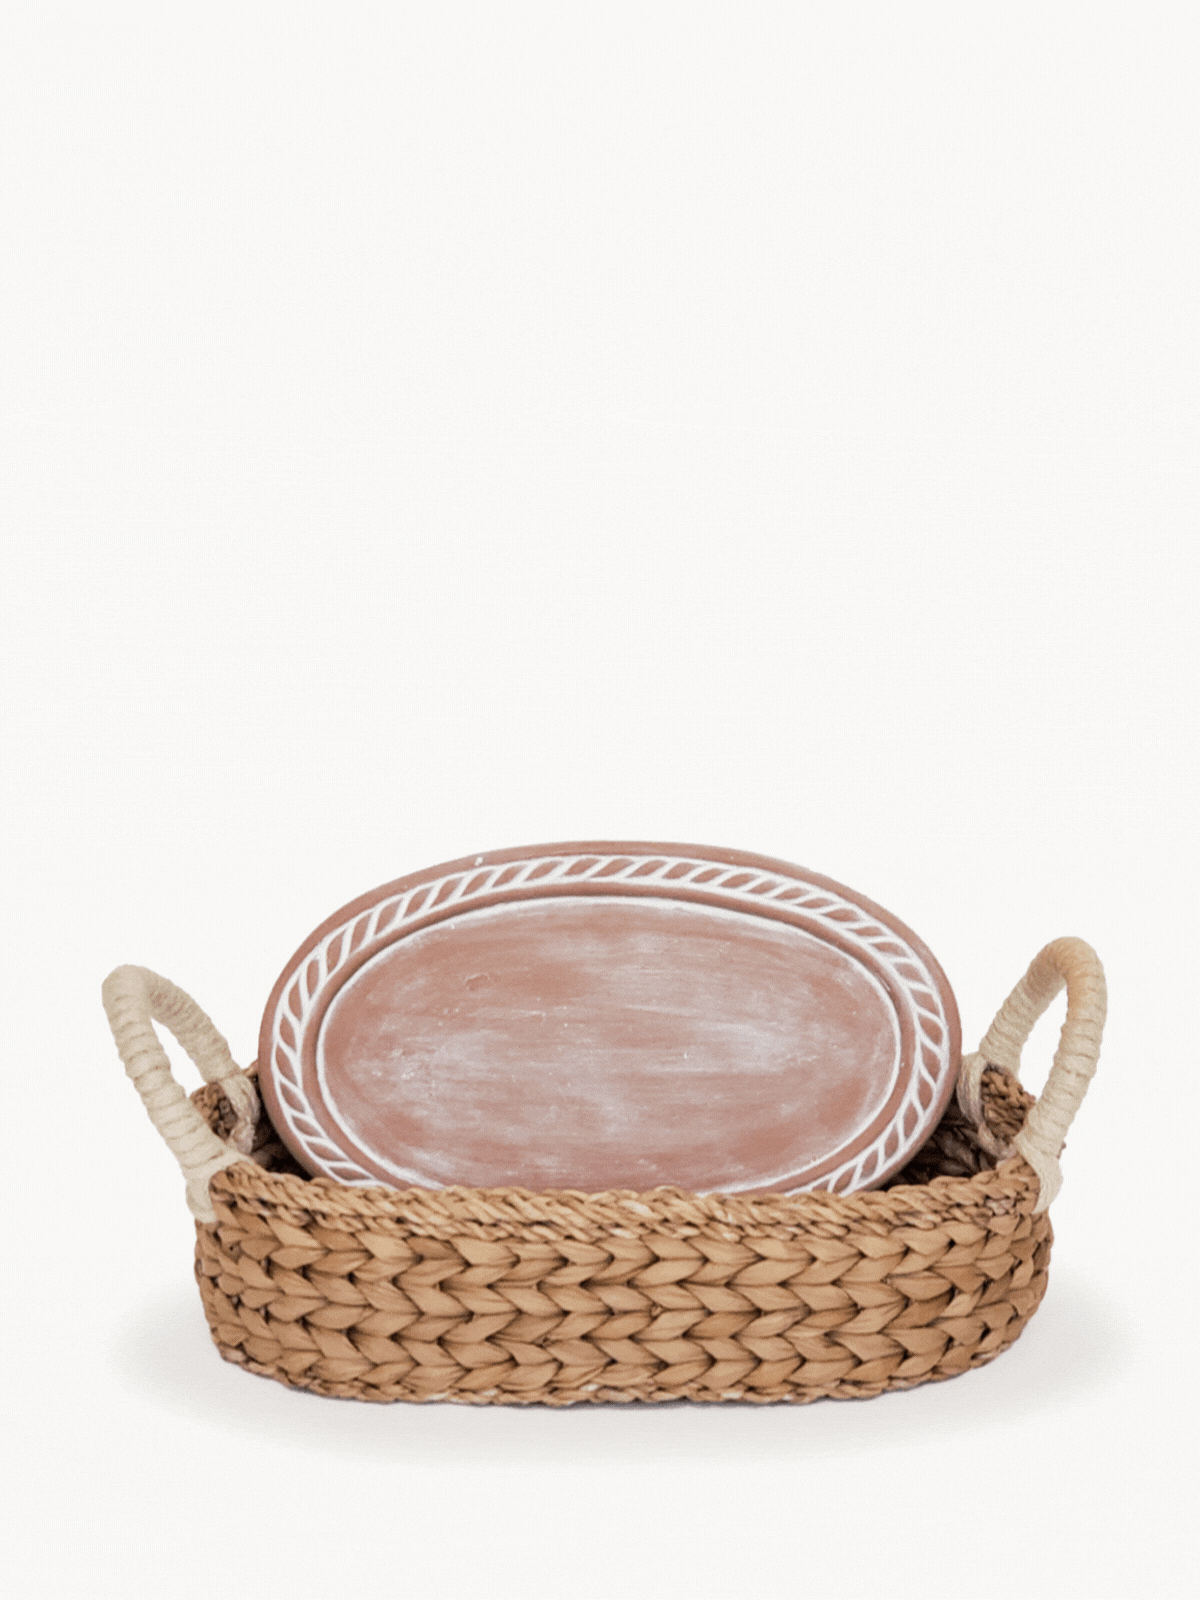 Personalized Bread Warmer & Basket - Recipe Oval